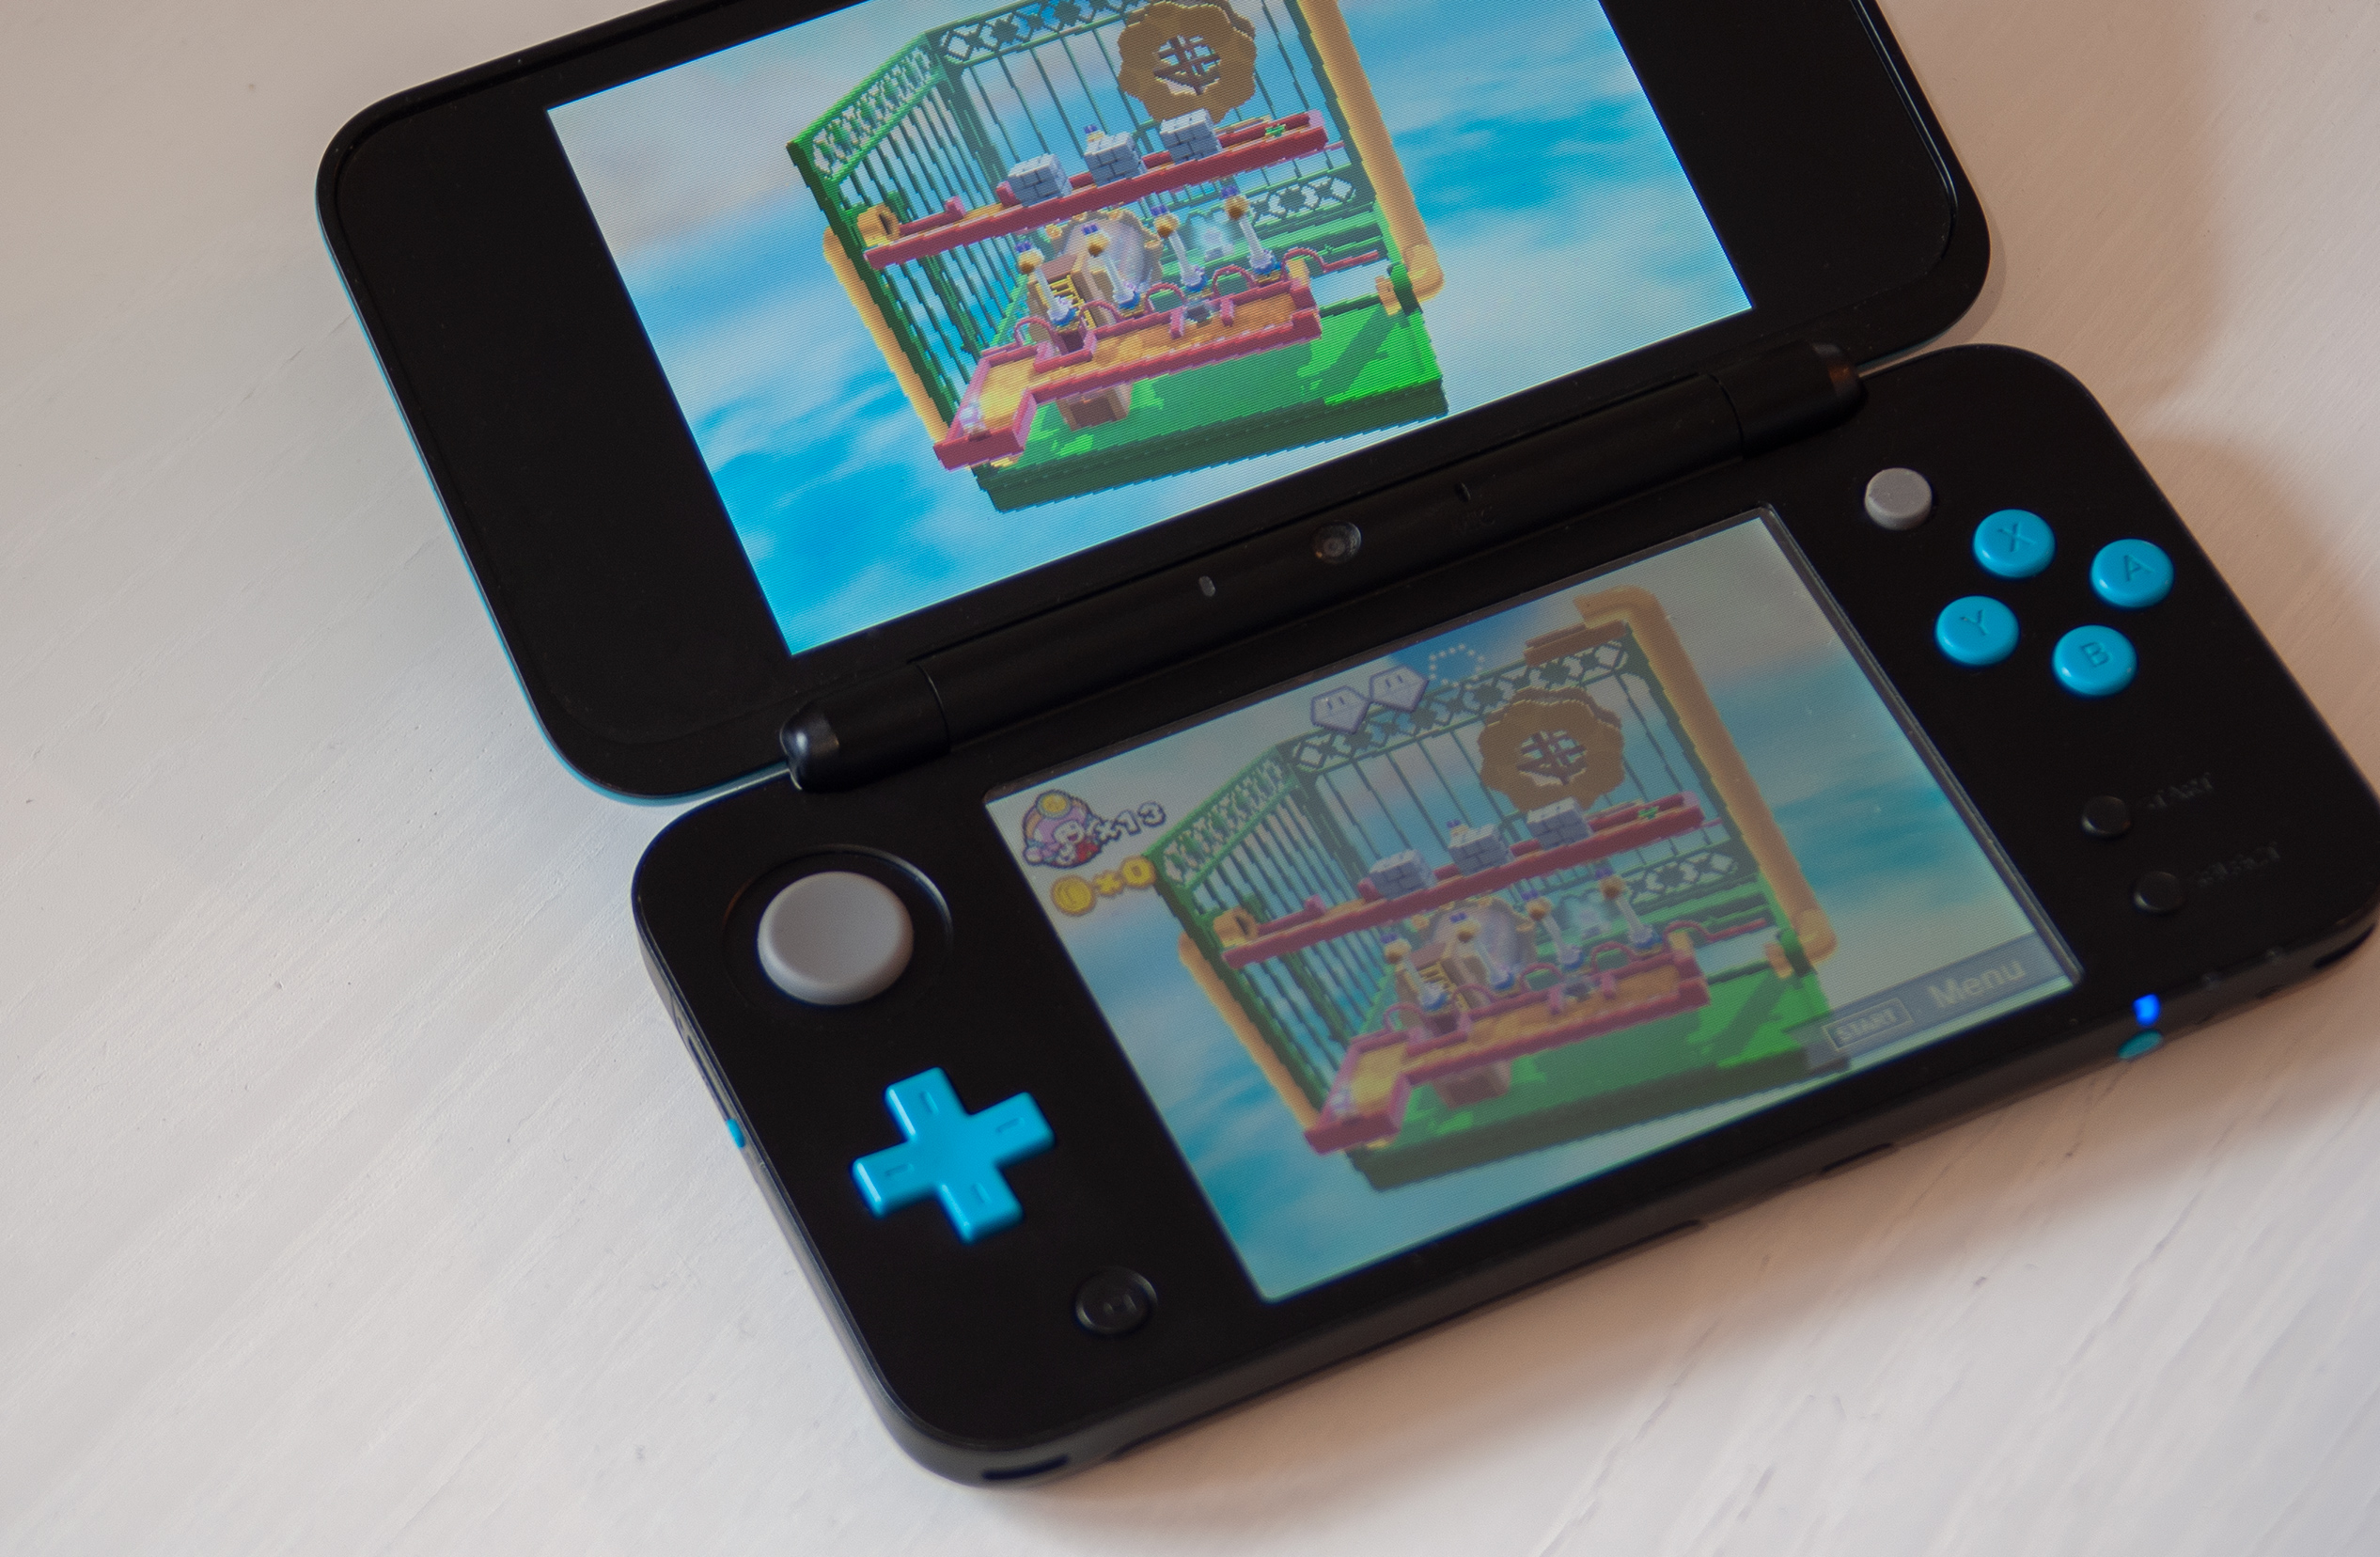 Nintendo 3DS i Wii U oficjalnie odchodzą na emeryturę koniec eShop